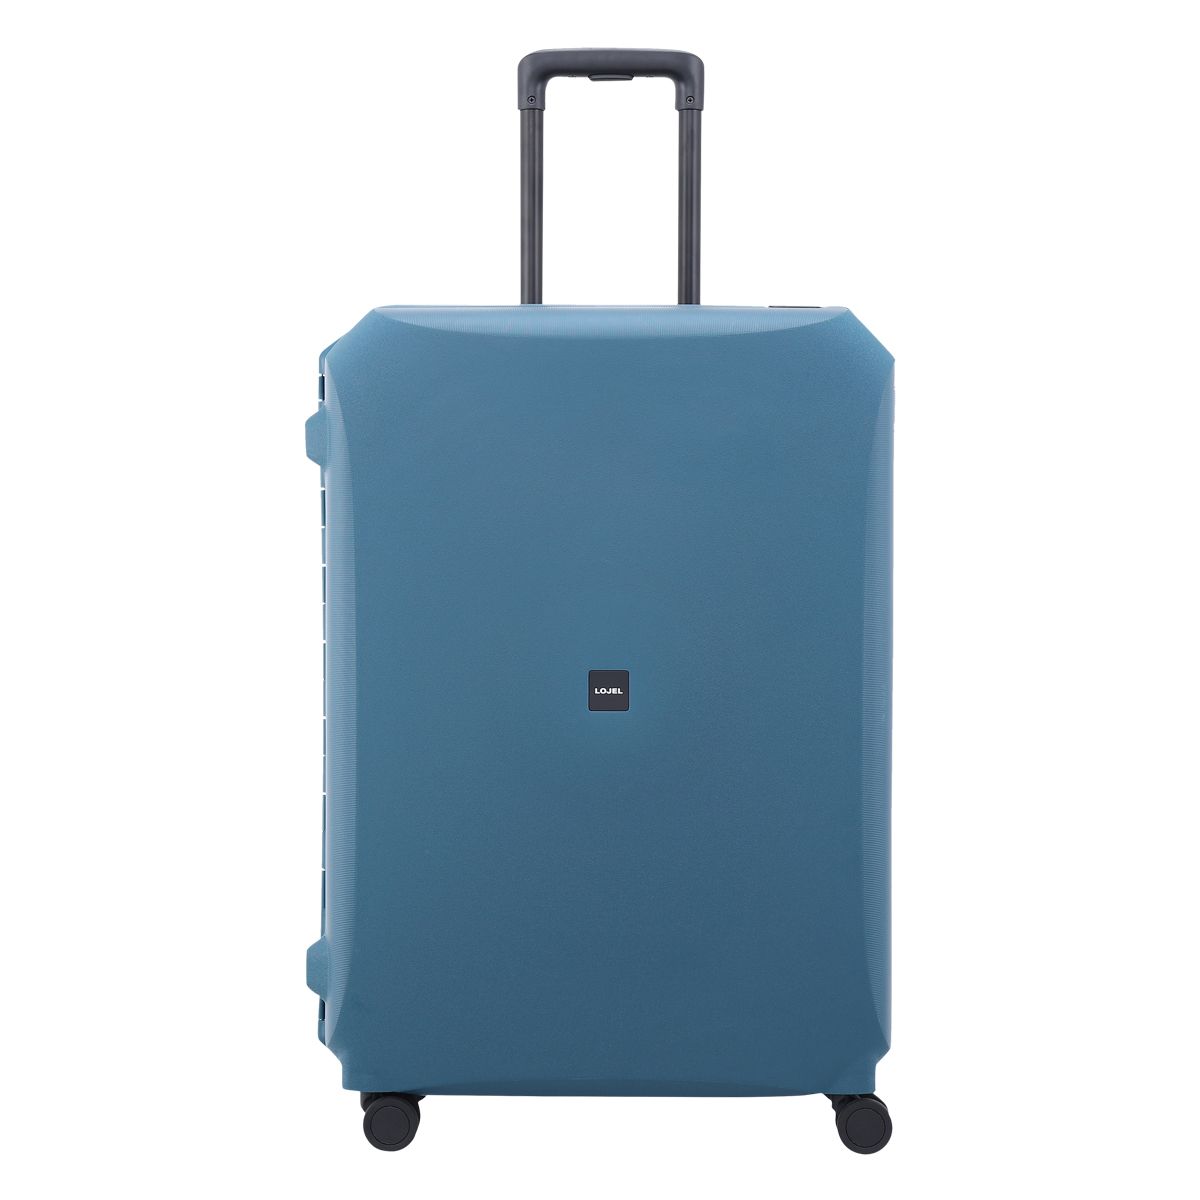 免税品 正規品 ロジェール スーツケース 112L 70cm Voja VOJA-L ハード LOJEL TSAロック搭載 キャリーバッグ キャリーケース